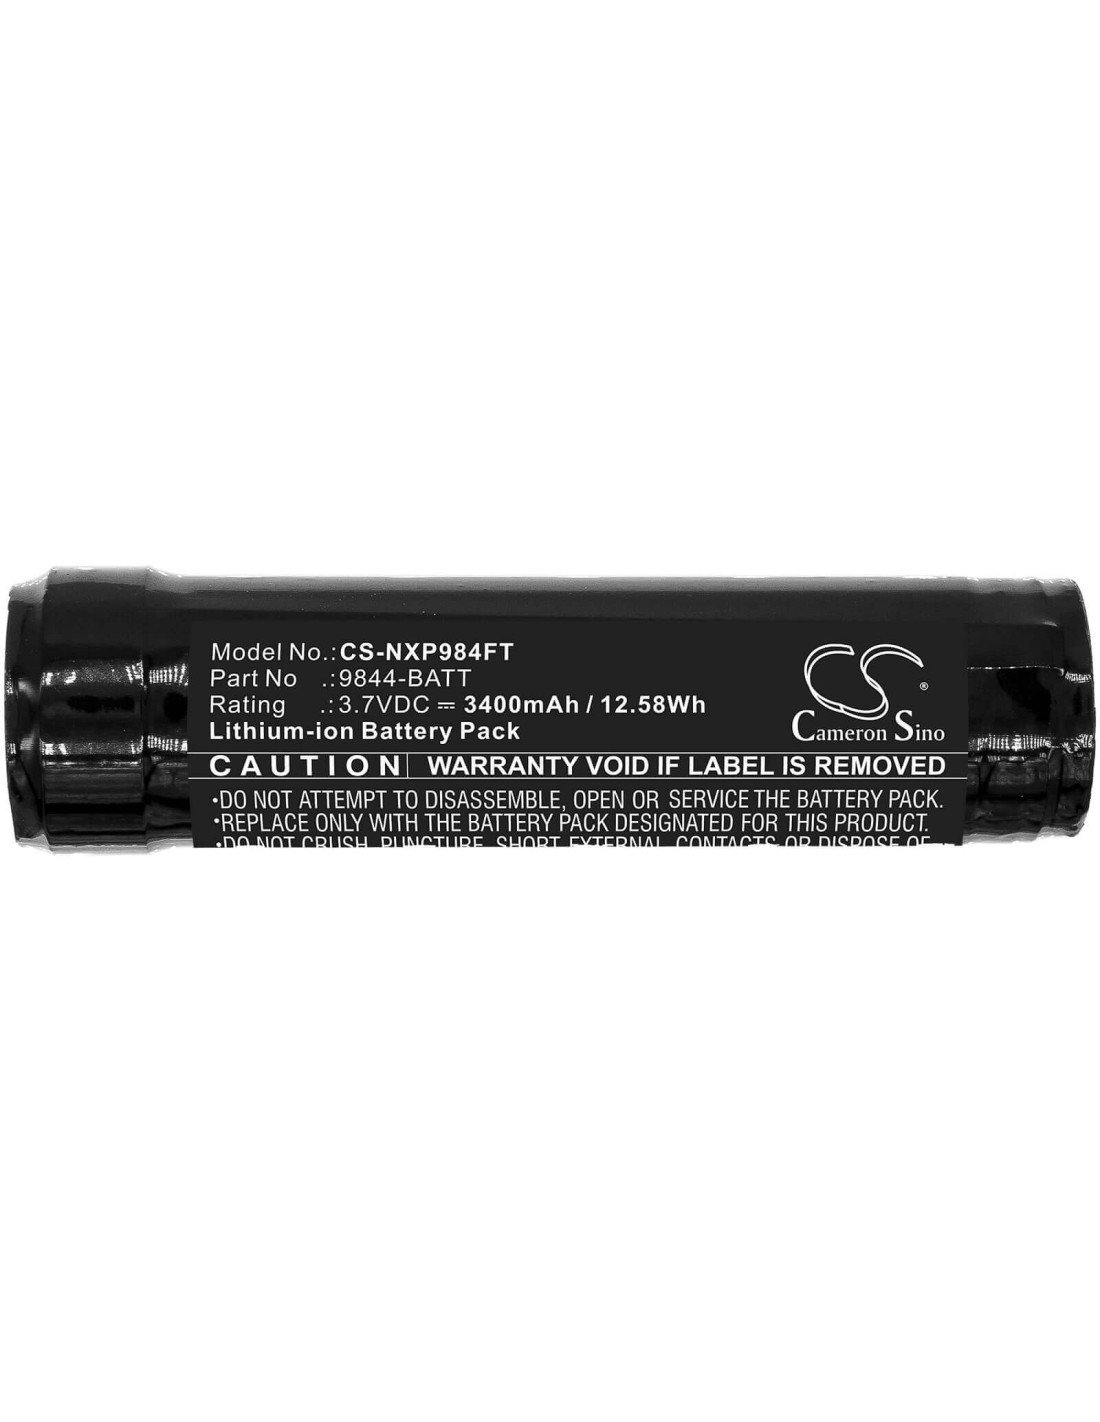 Battery for Nightstick, Nsp-9842xl, Nsr-9844xl, Usb-578xl 3.7V, 3400mAh - 12.58Wh